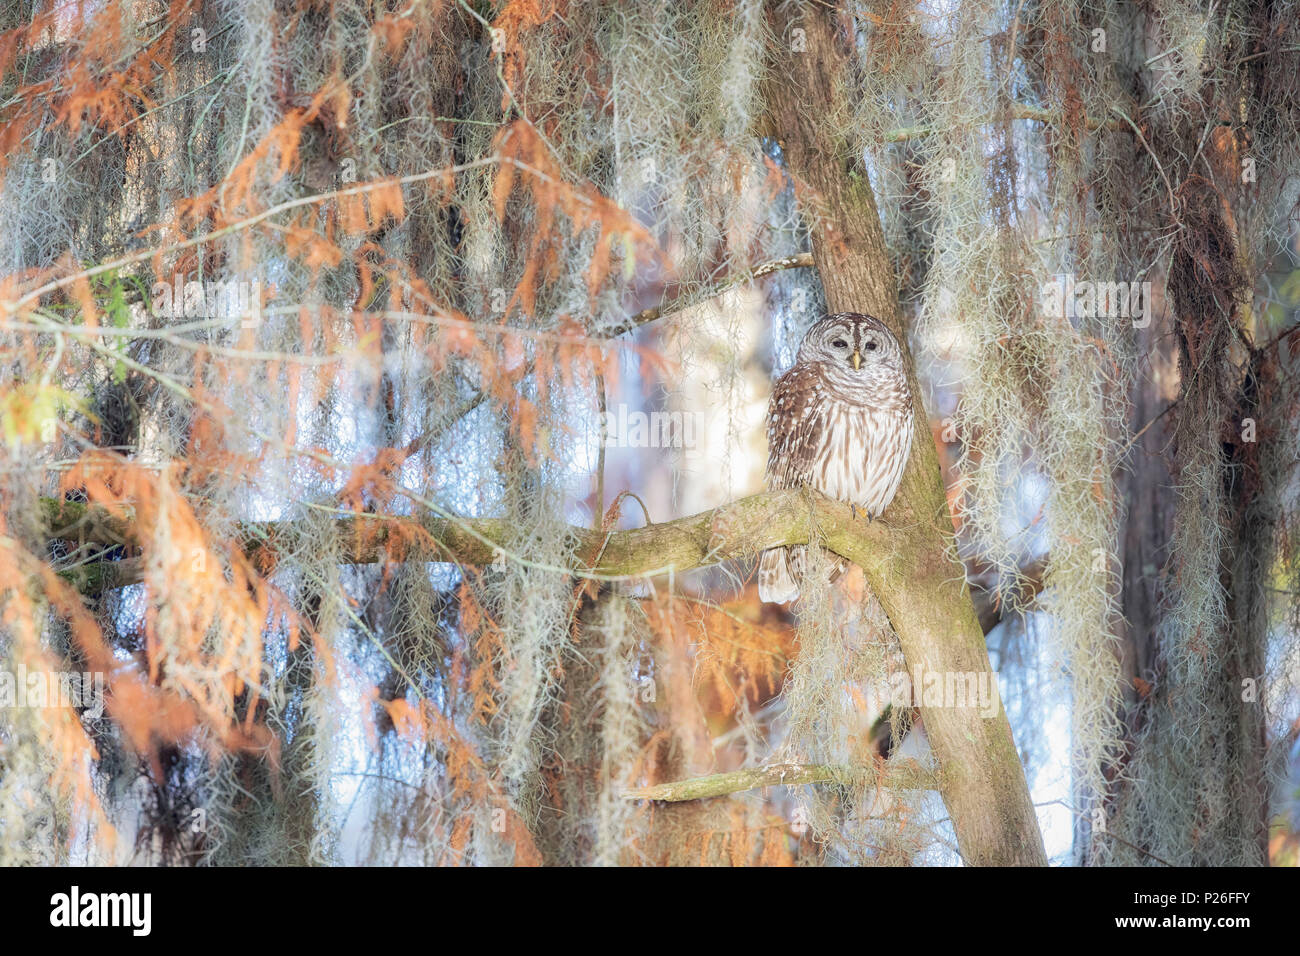 Verjähren in Owl (Strix varia), See Martin, Breaux Bridge, Atchafalaya Becken, im Süden der USA, USA, Nordamerika Stockfoto